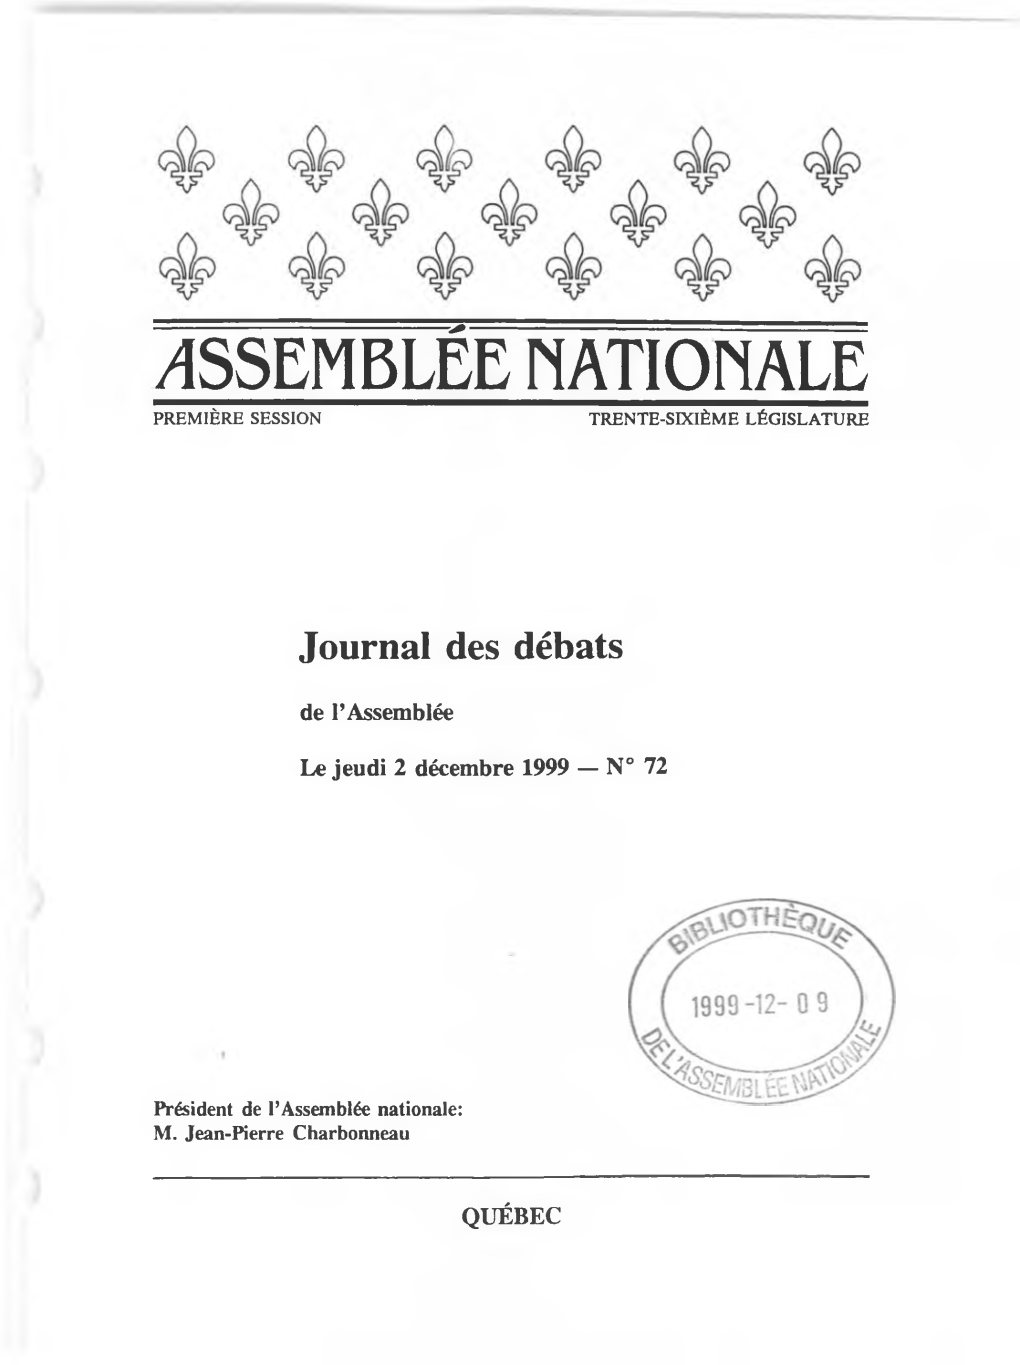 Issemblée Nationale Première Session Trente-Sixième Législature